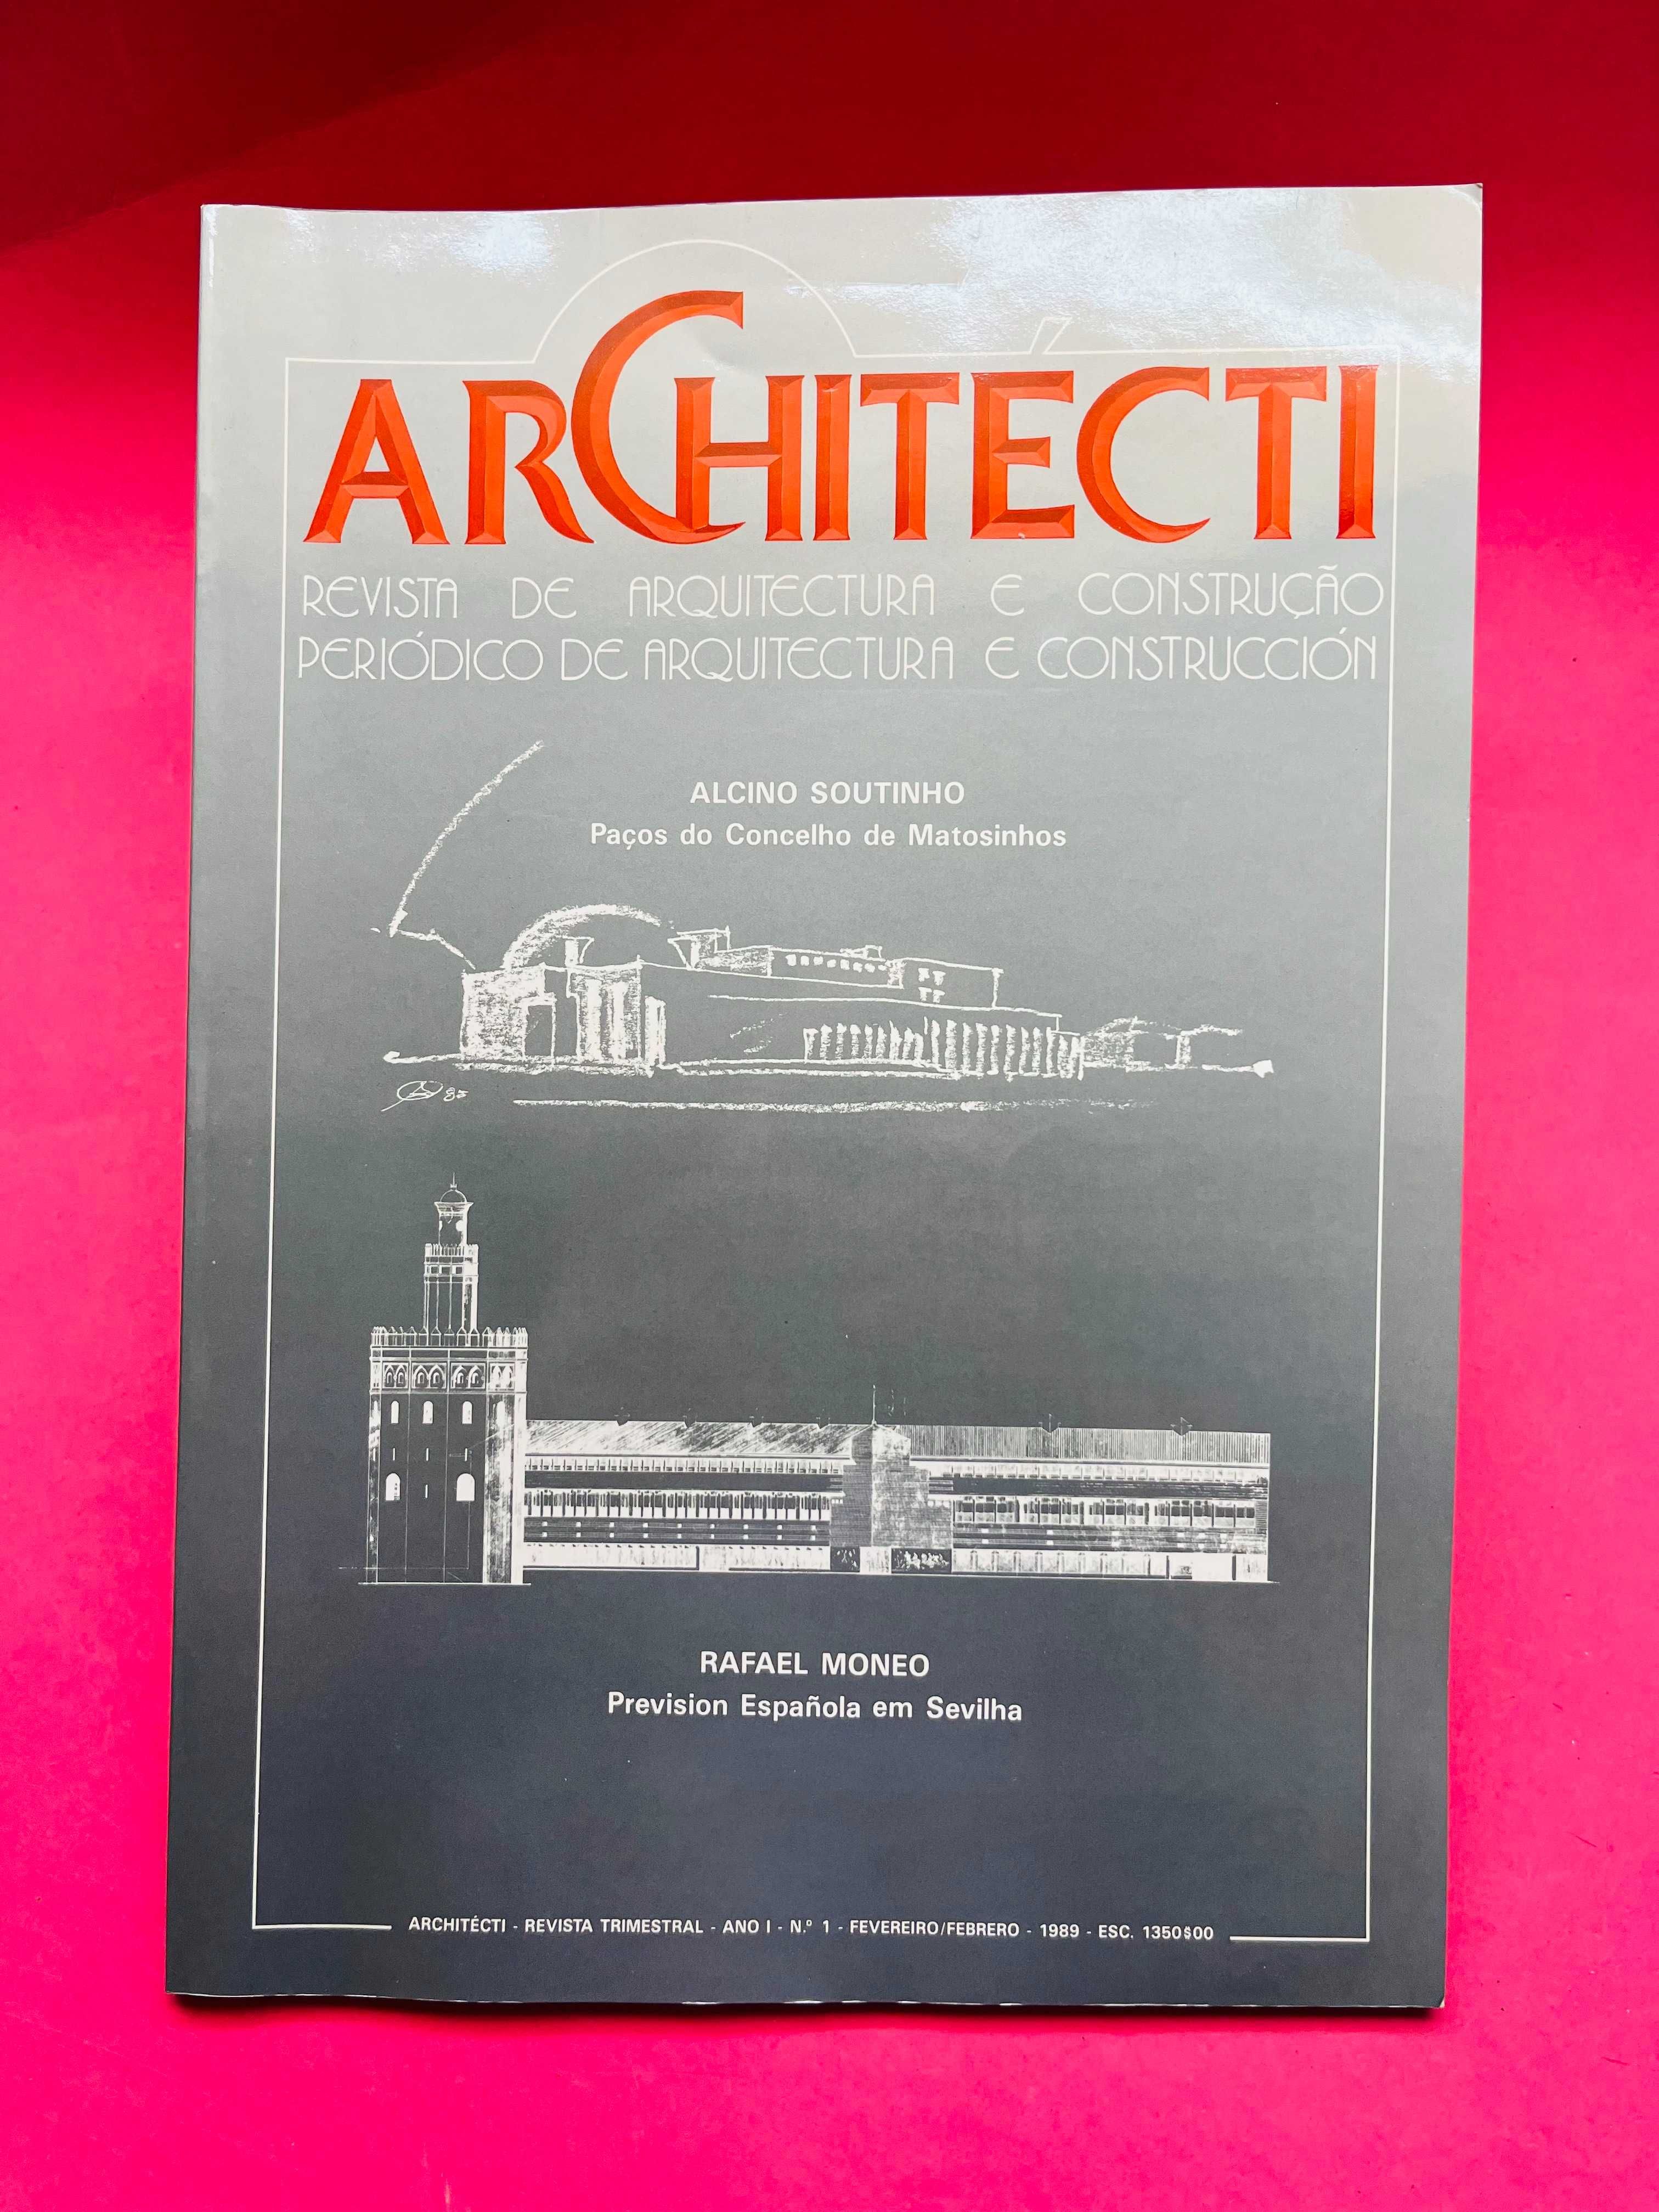 Architecti Revista de Arquitetura e Construção Nº1, Fevereiro 1989